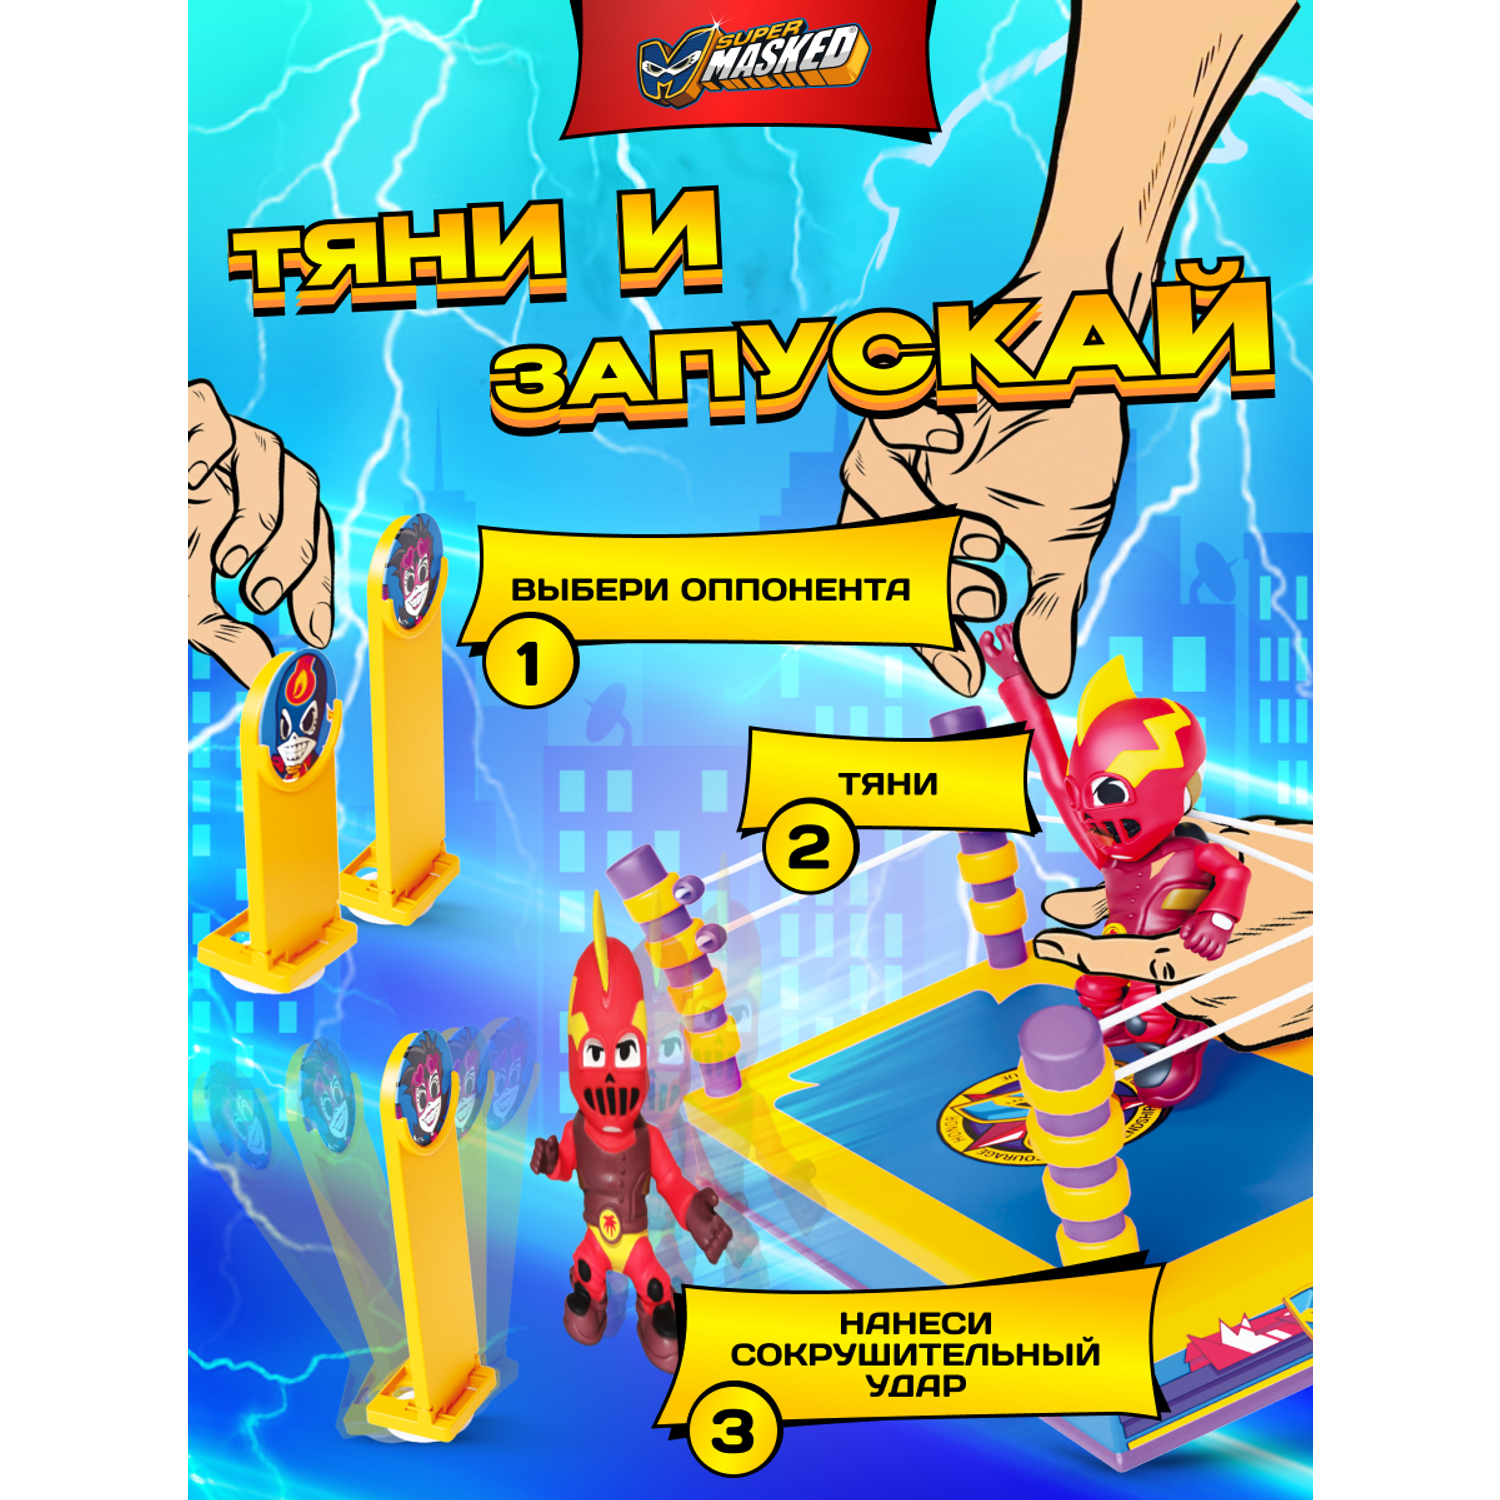 Игровой набор SUPERMASKED с рингом и фигуркой супергероя KOHETEKIN со звуком - фото 10